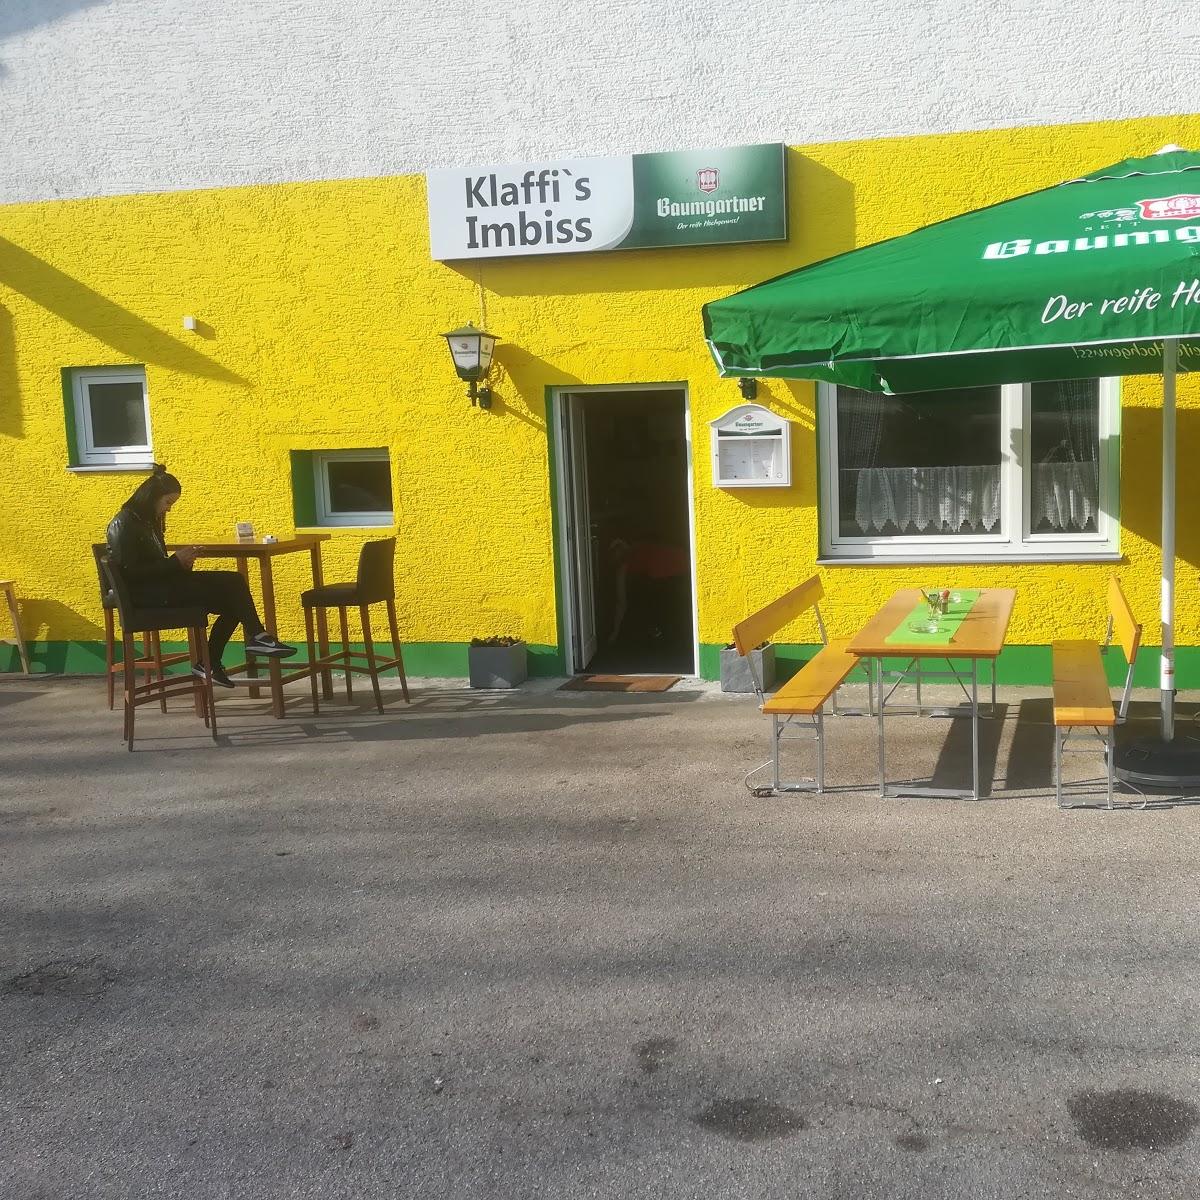 Restaurant "Klaffis Imbiss" in Kopfing im Innkreis